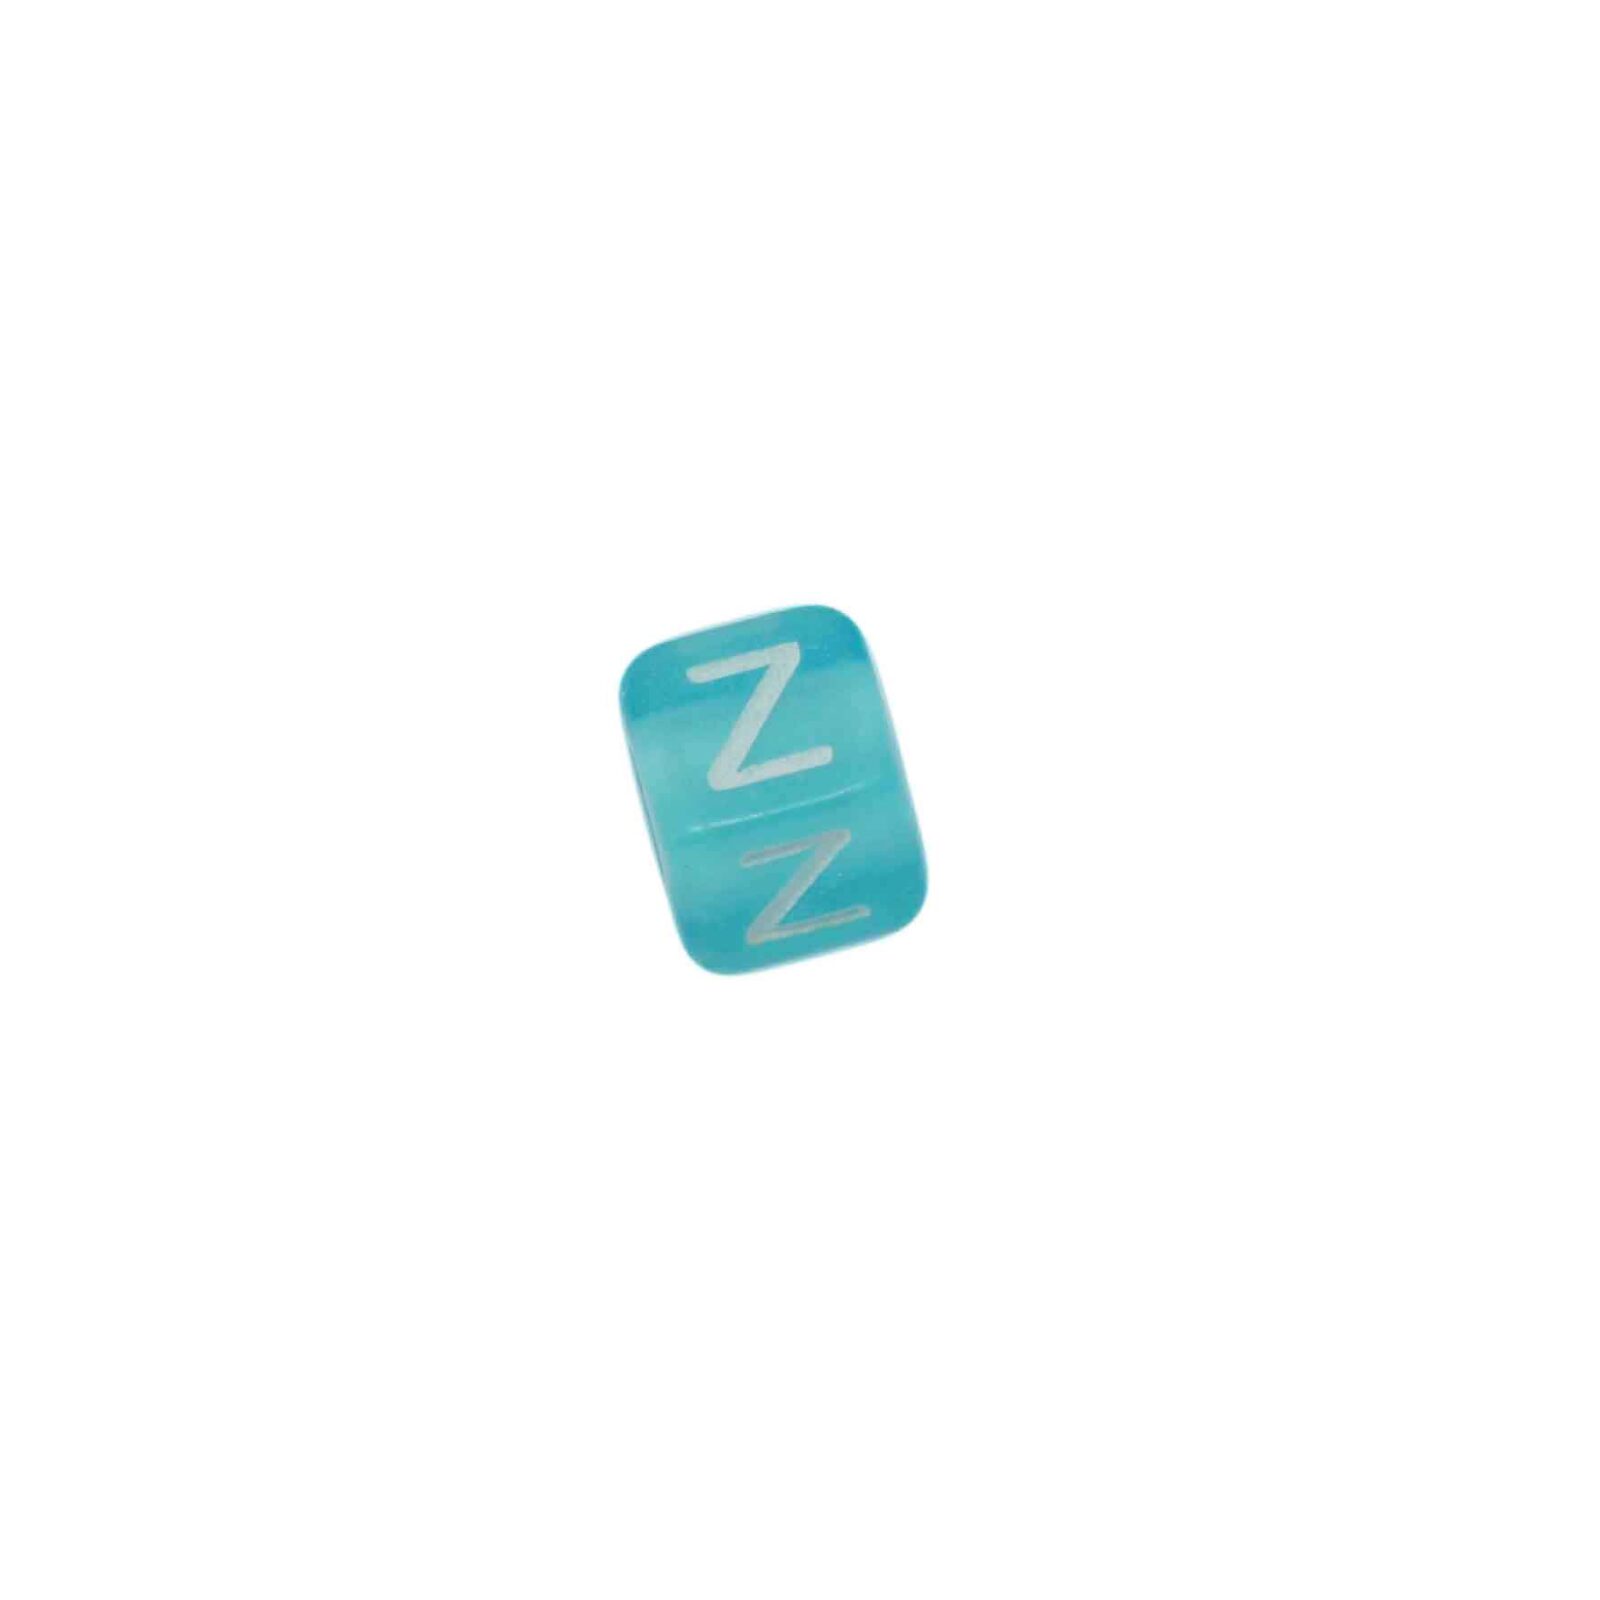 Blauwe vierkante letterkraal Z